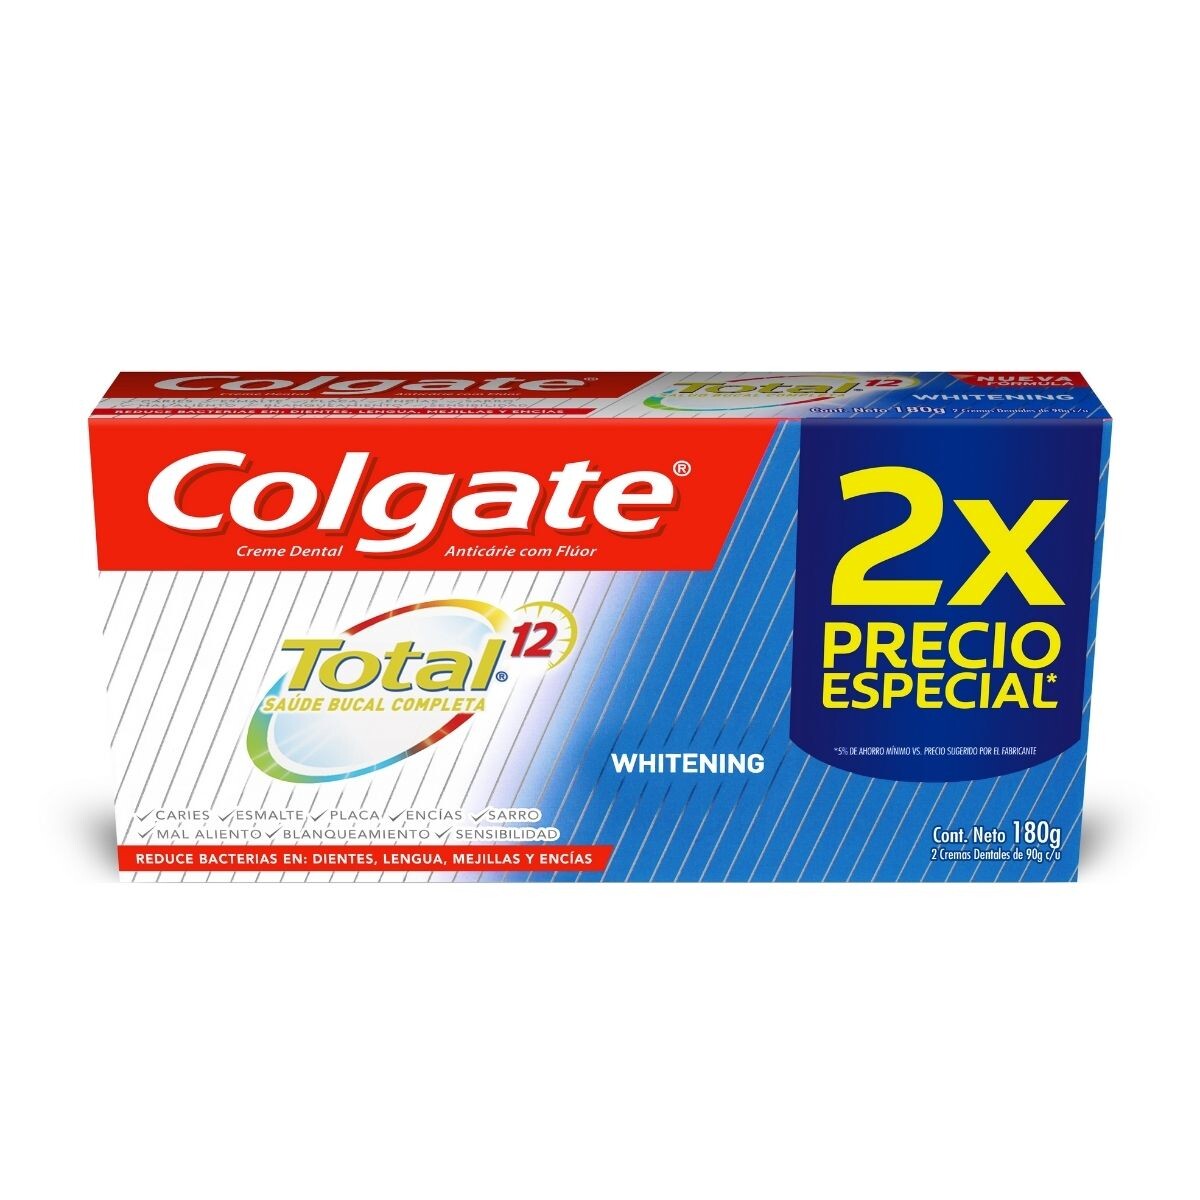 Pasta Dental Colgate Total 12 Whitening - Pack X2 90 GR 